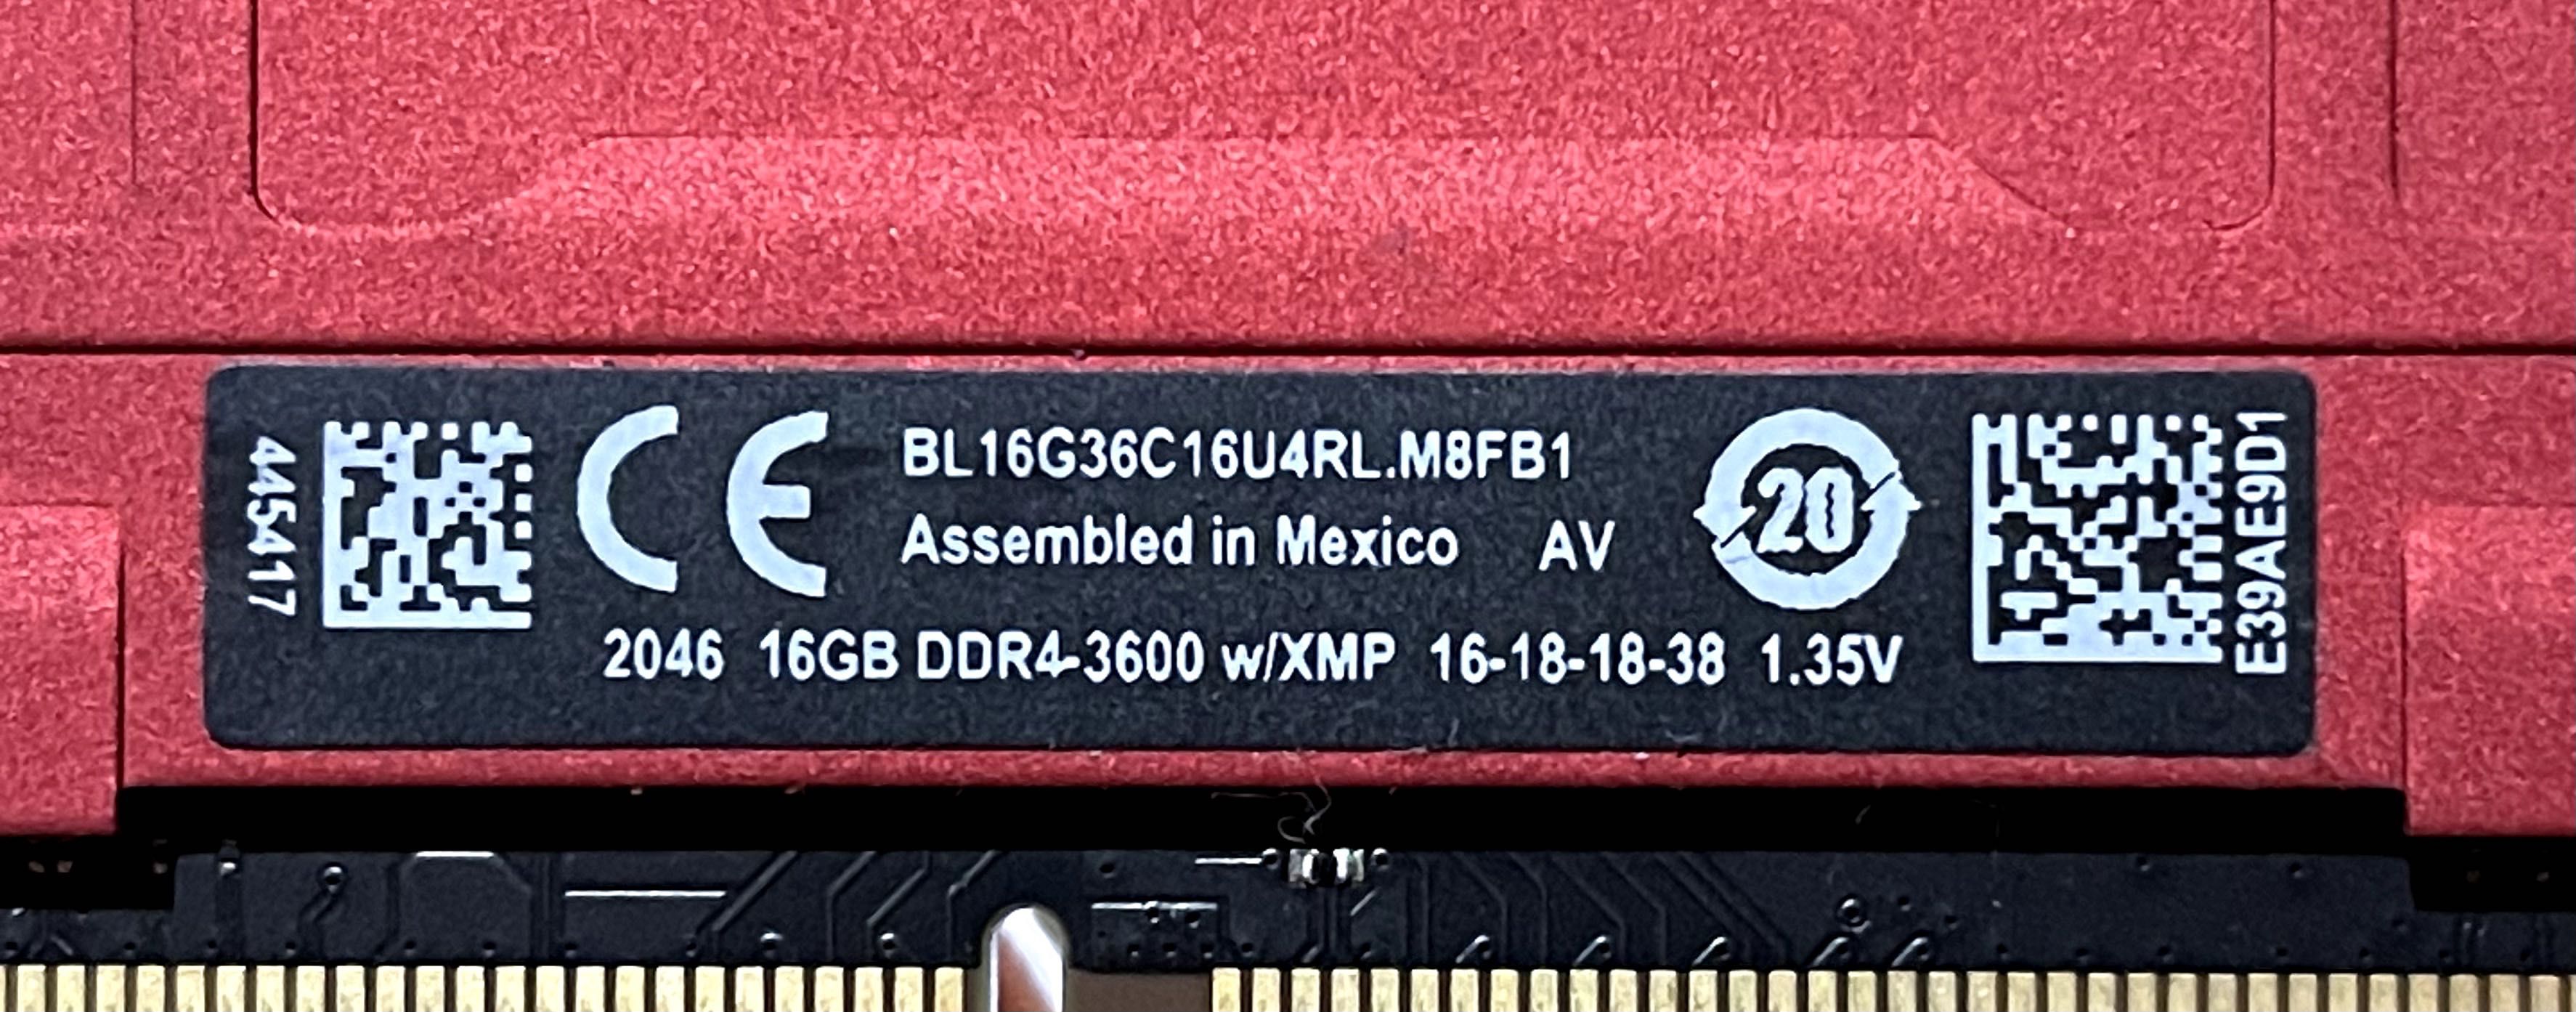 Оперативная память Crucial  16GB DDR4-3600 16-18-18-38